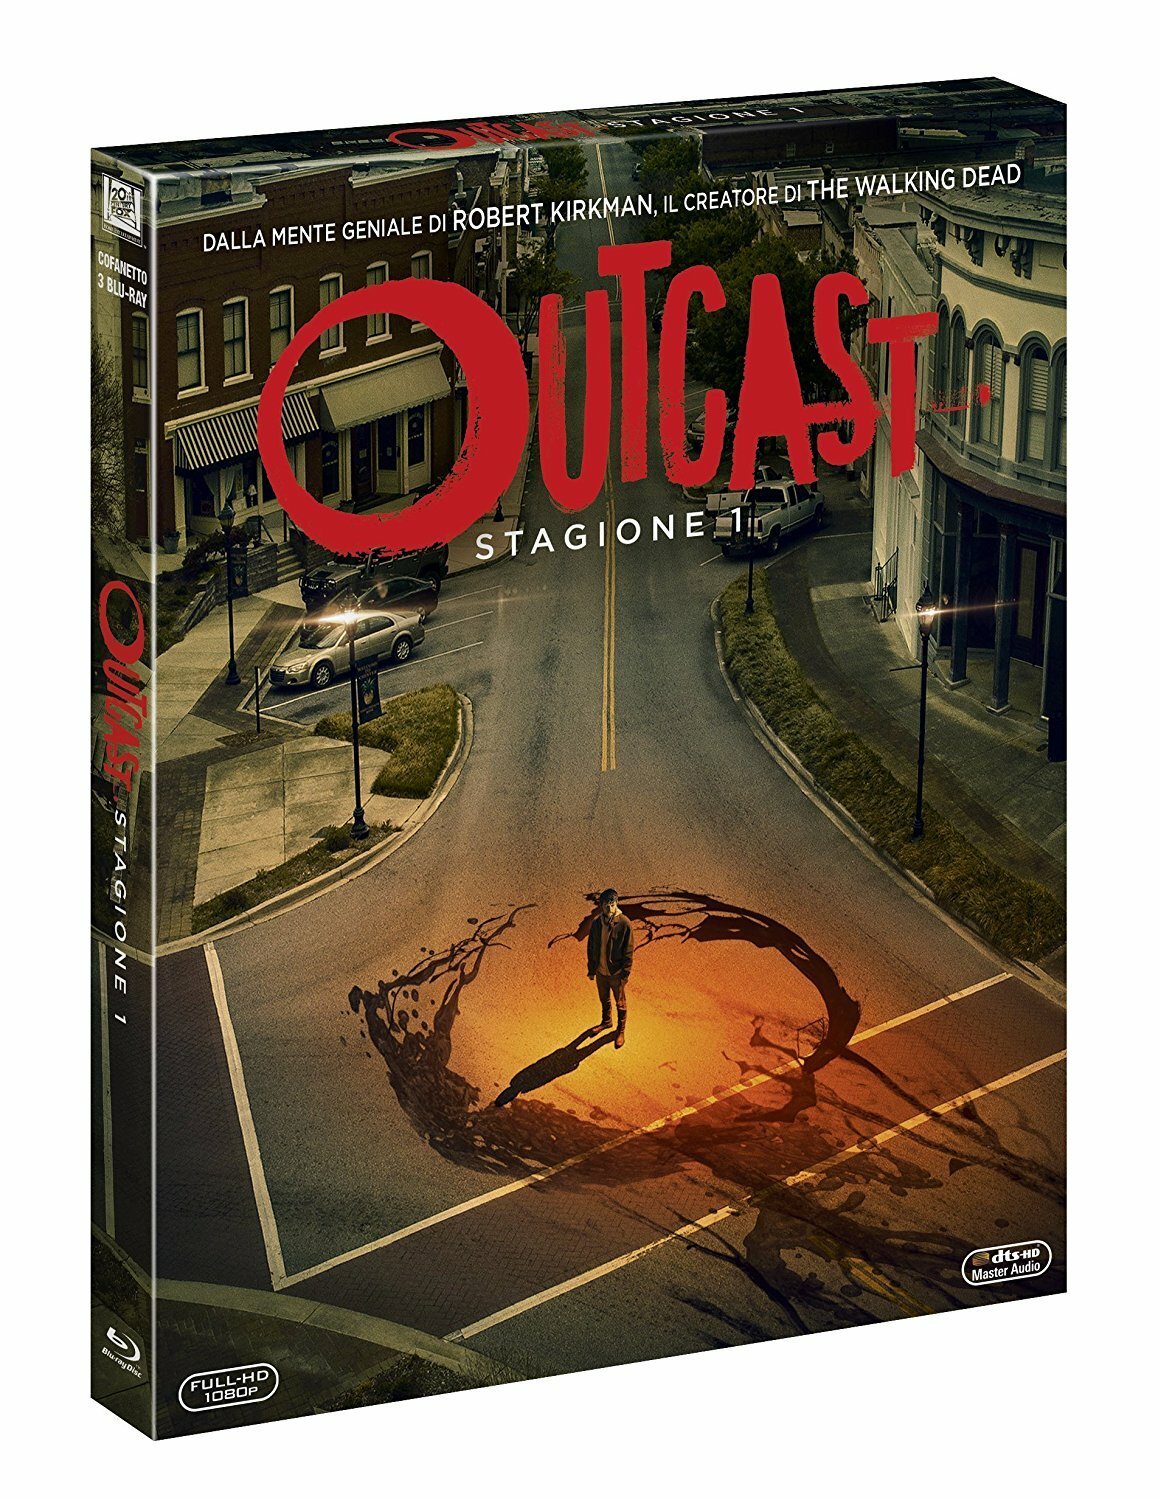 La prima stagione di Outcast disponibile in DVD e Blu-ray